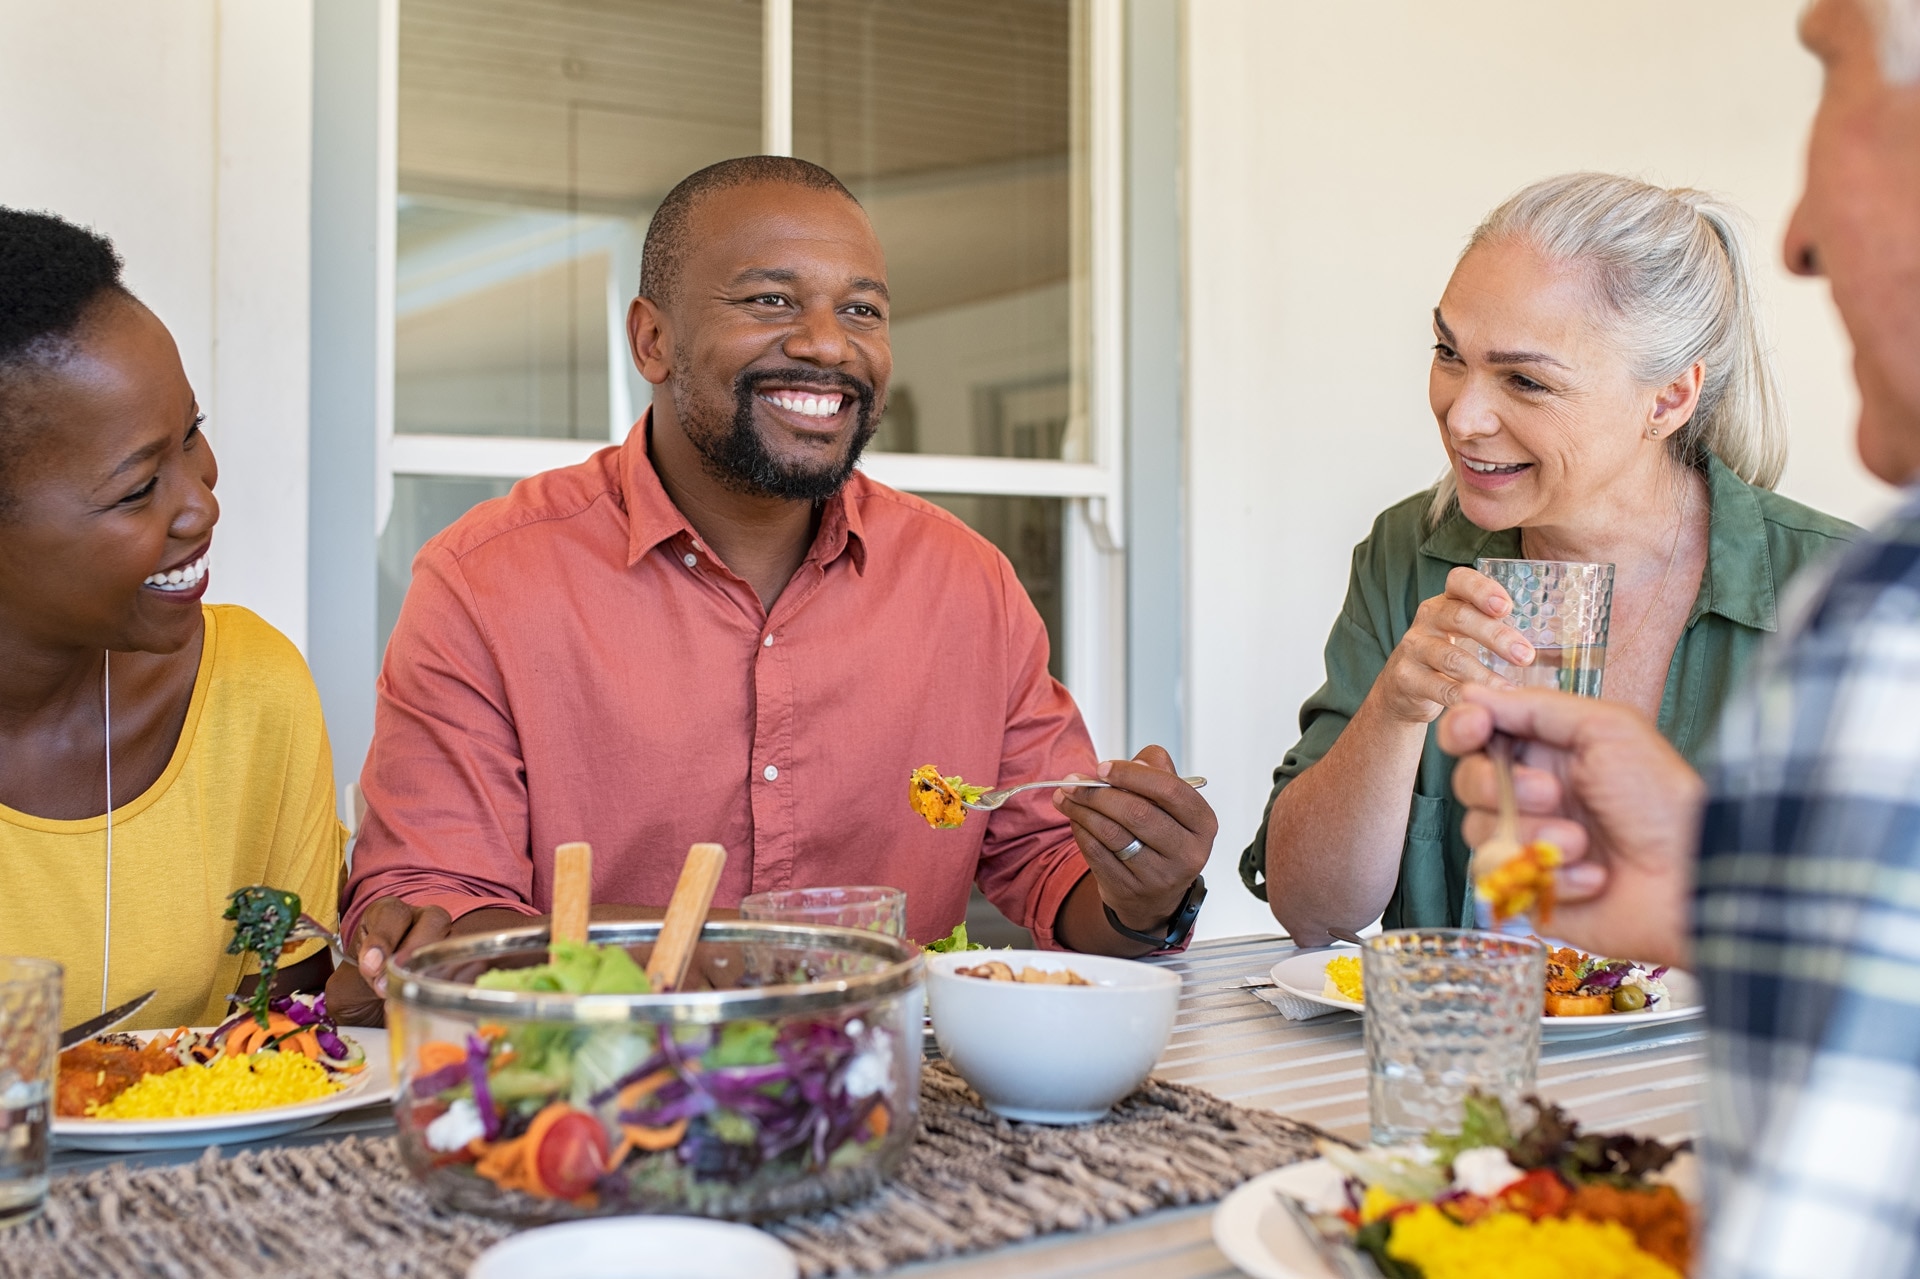 Gelukkige, lachende vrienden die samen thuis van een lunch genieten. Volwassen mensen met meerdere etnische achtergronden vieren een blijde gebeurtenis en eten gezond voedsel. Ouder echtpaar en Afrikaans echtpaar voeren gesprek tijdens maaltijd.